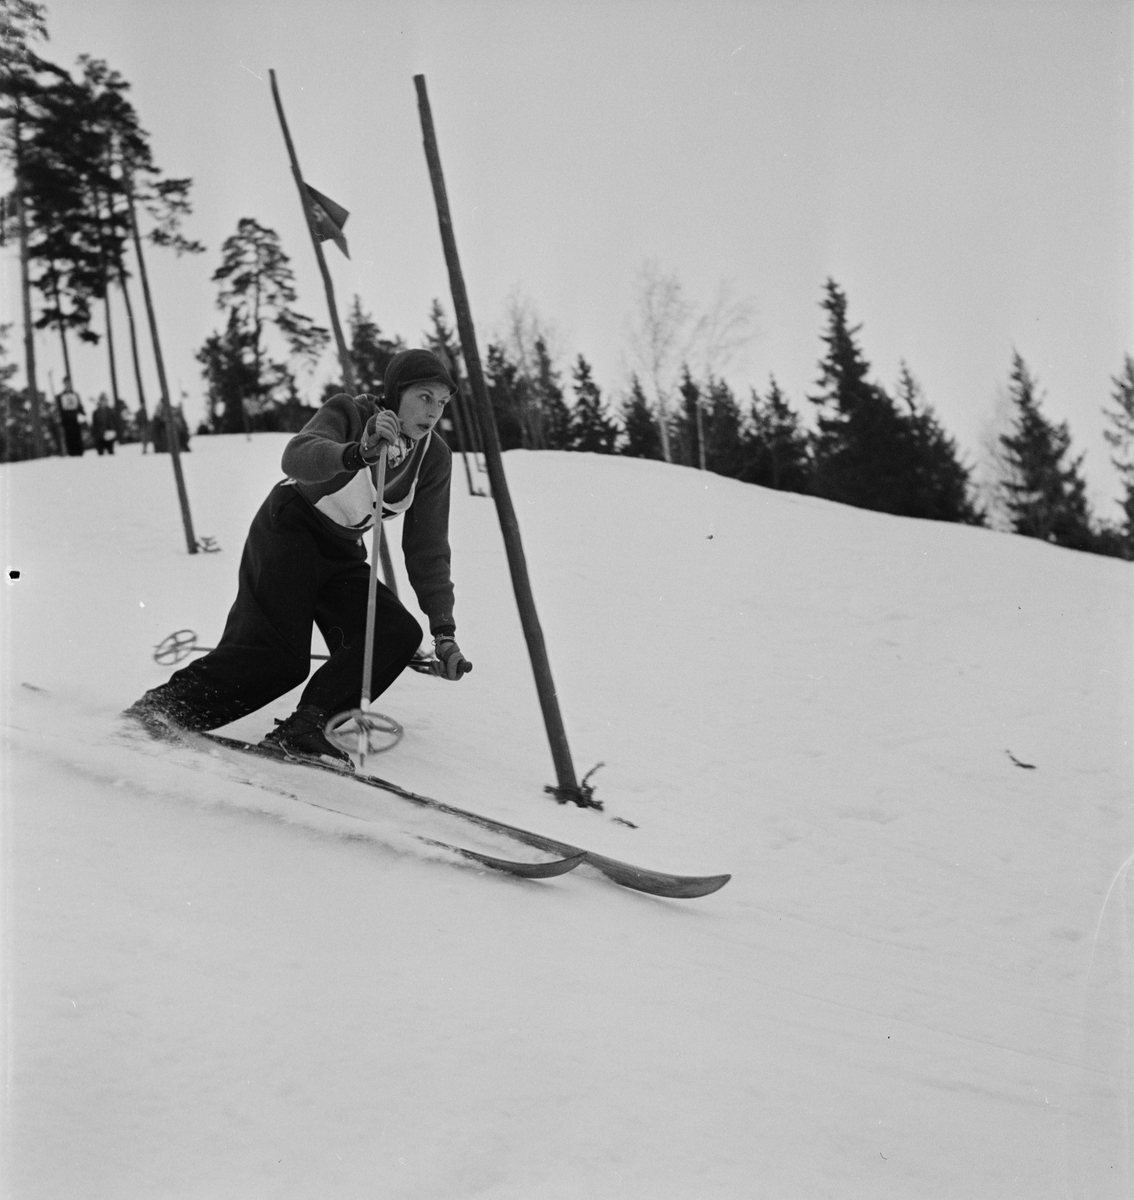 Skidor - slalom, sannolikt Uppsala 1954